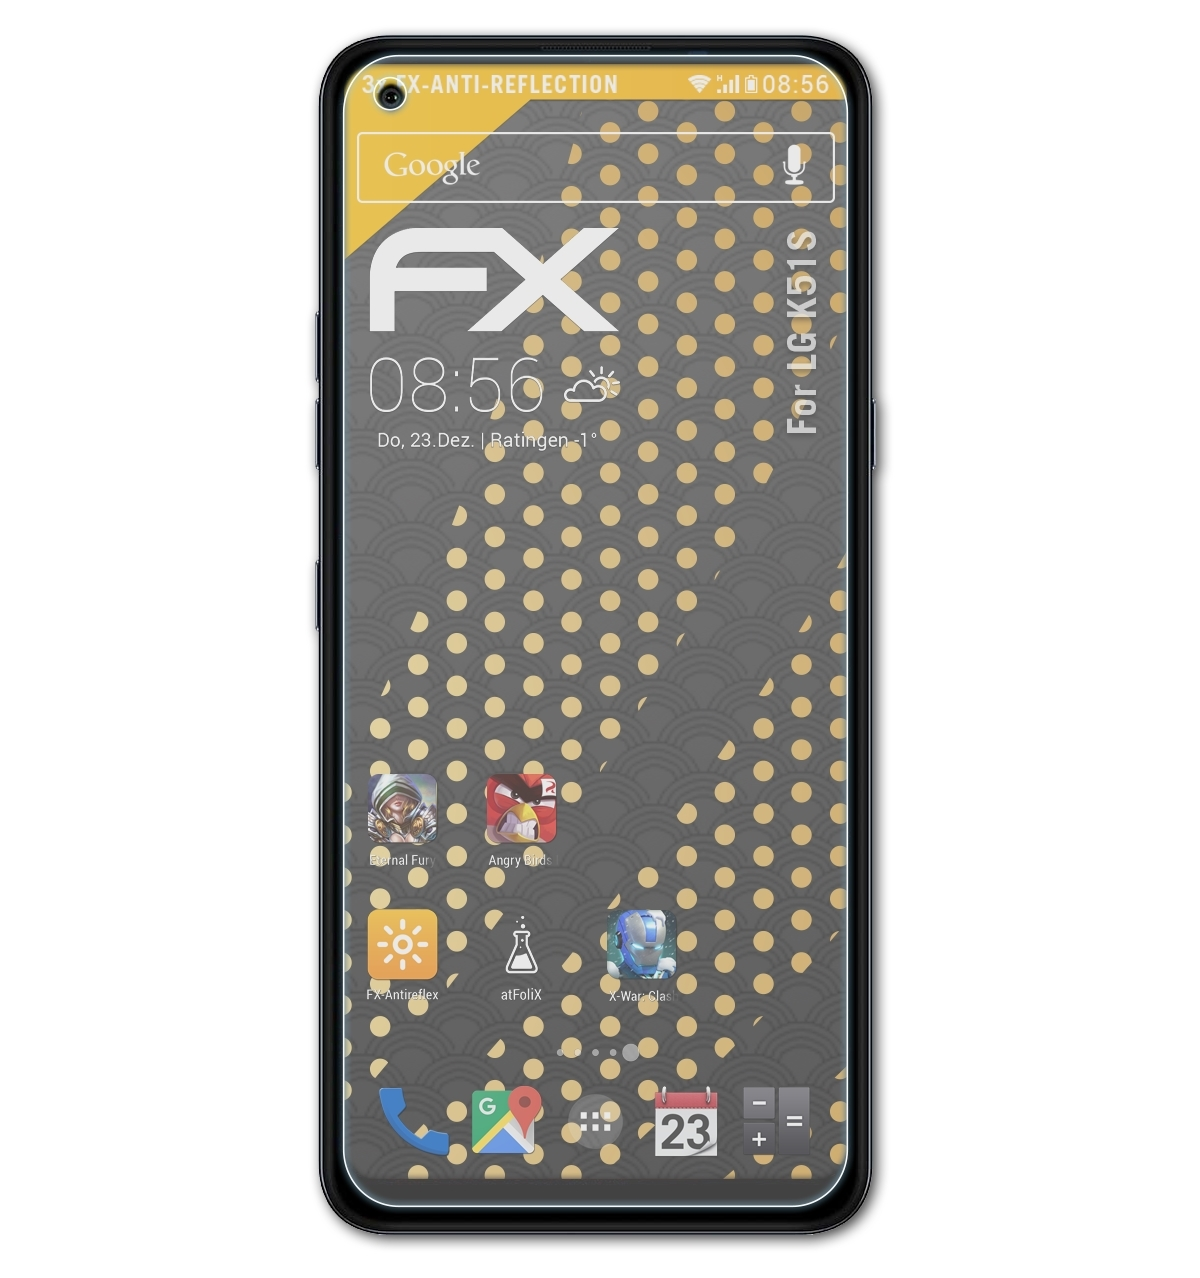 ATFOLIX 3x FX-Antireflex K51S) LG Displayschutz(für